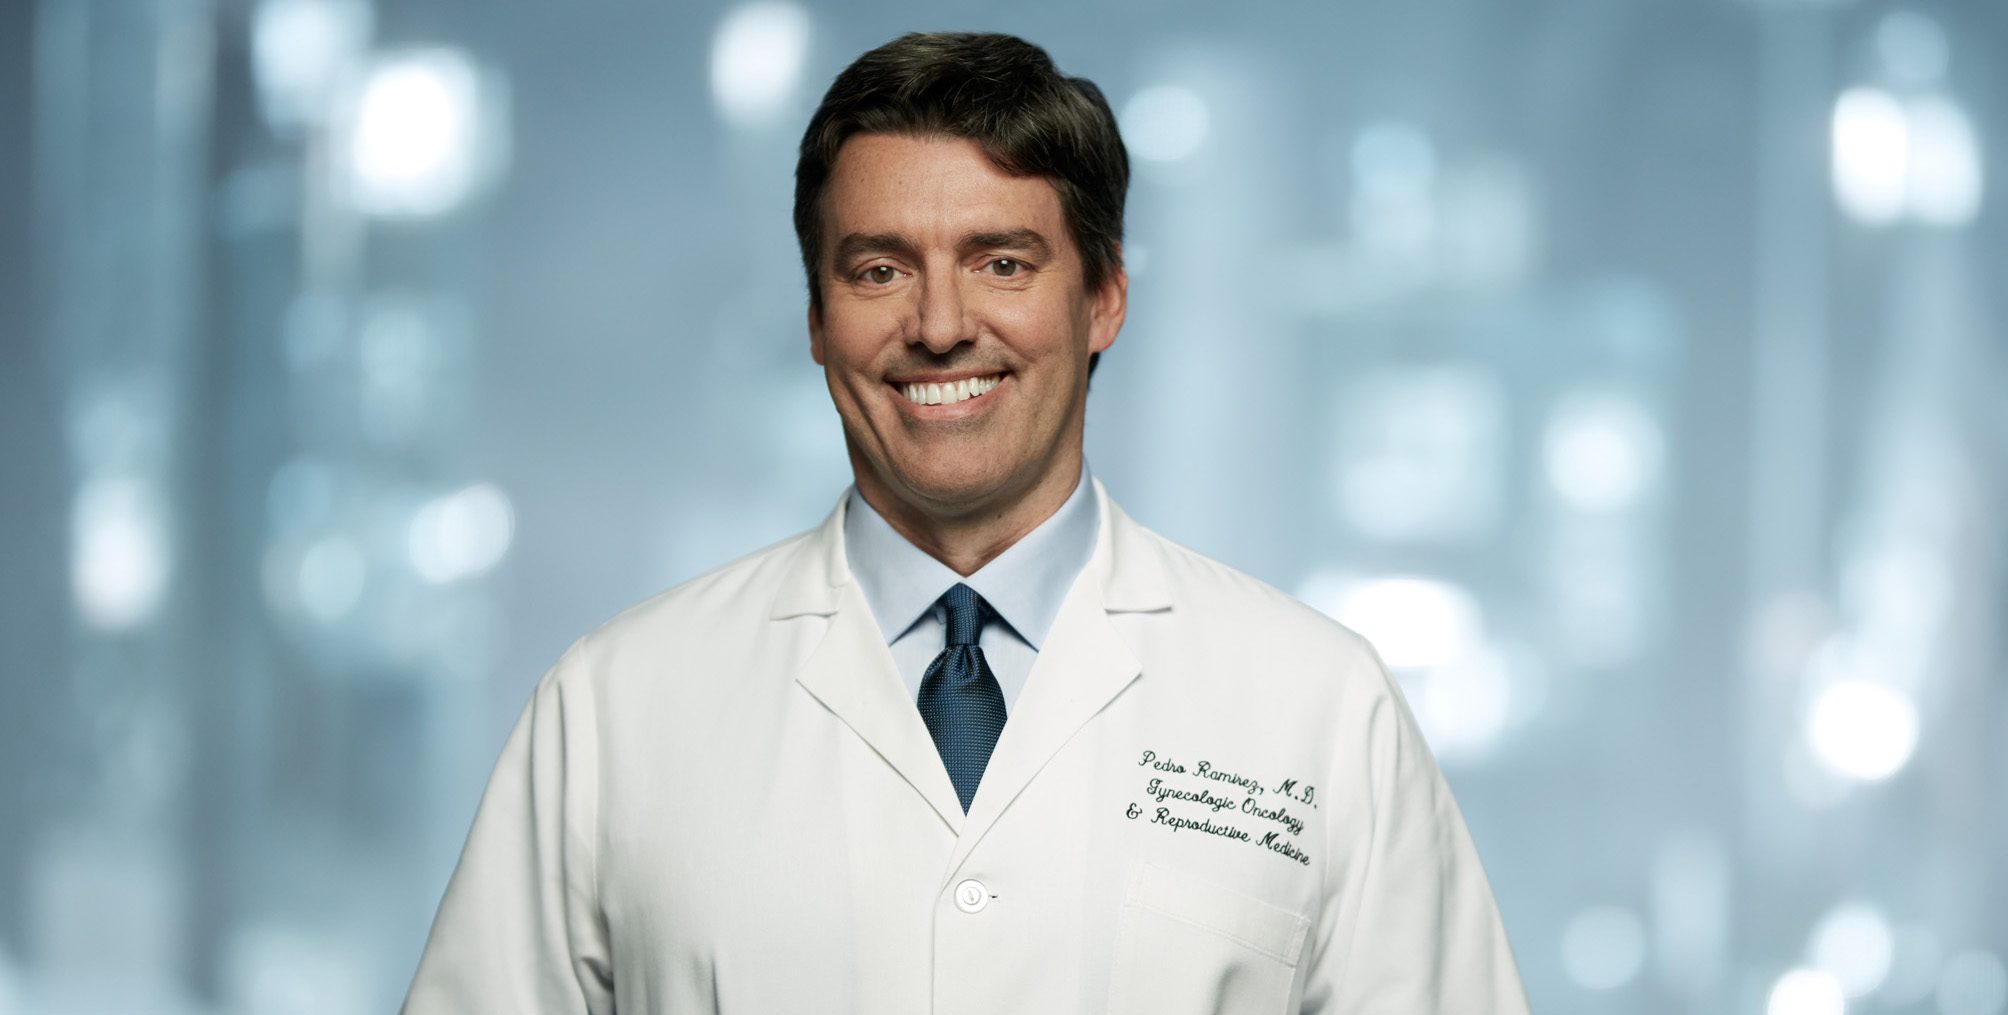 妇科肿瘤专家佩德罗·拉米雷斯,医学博士